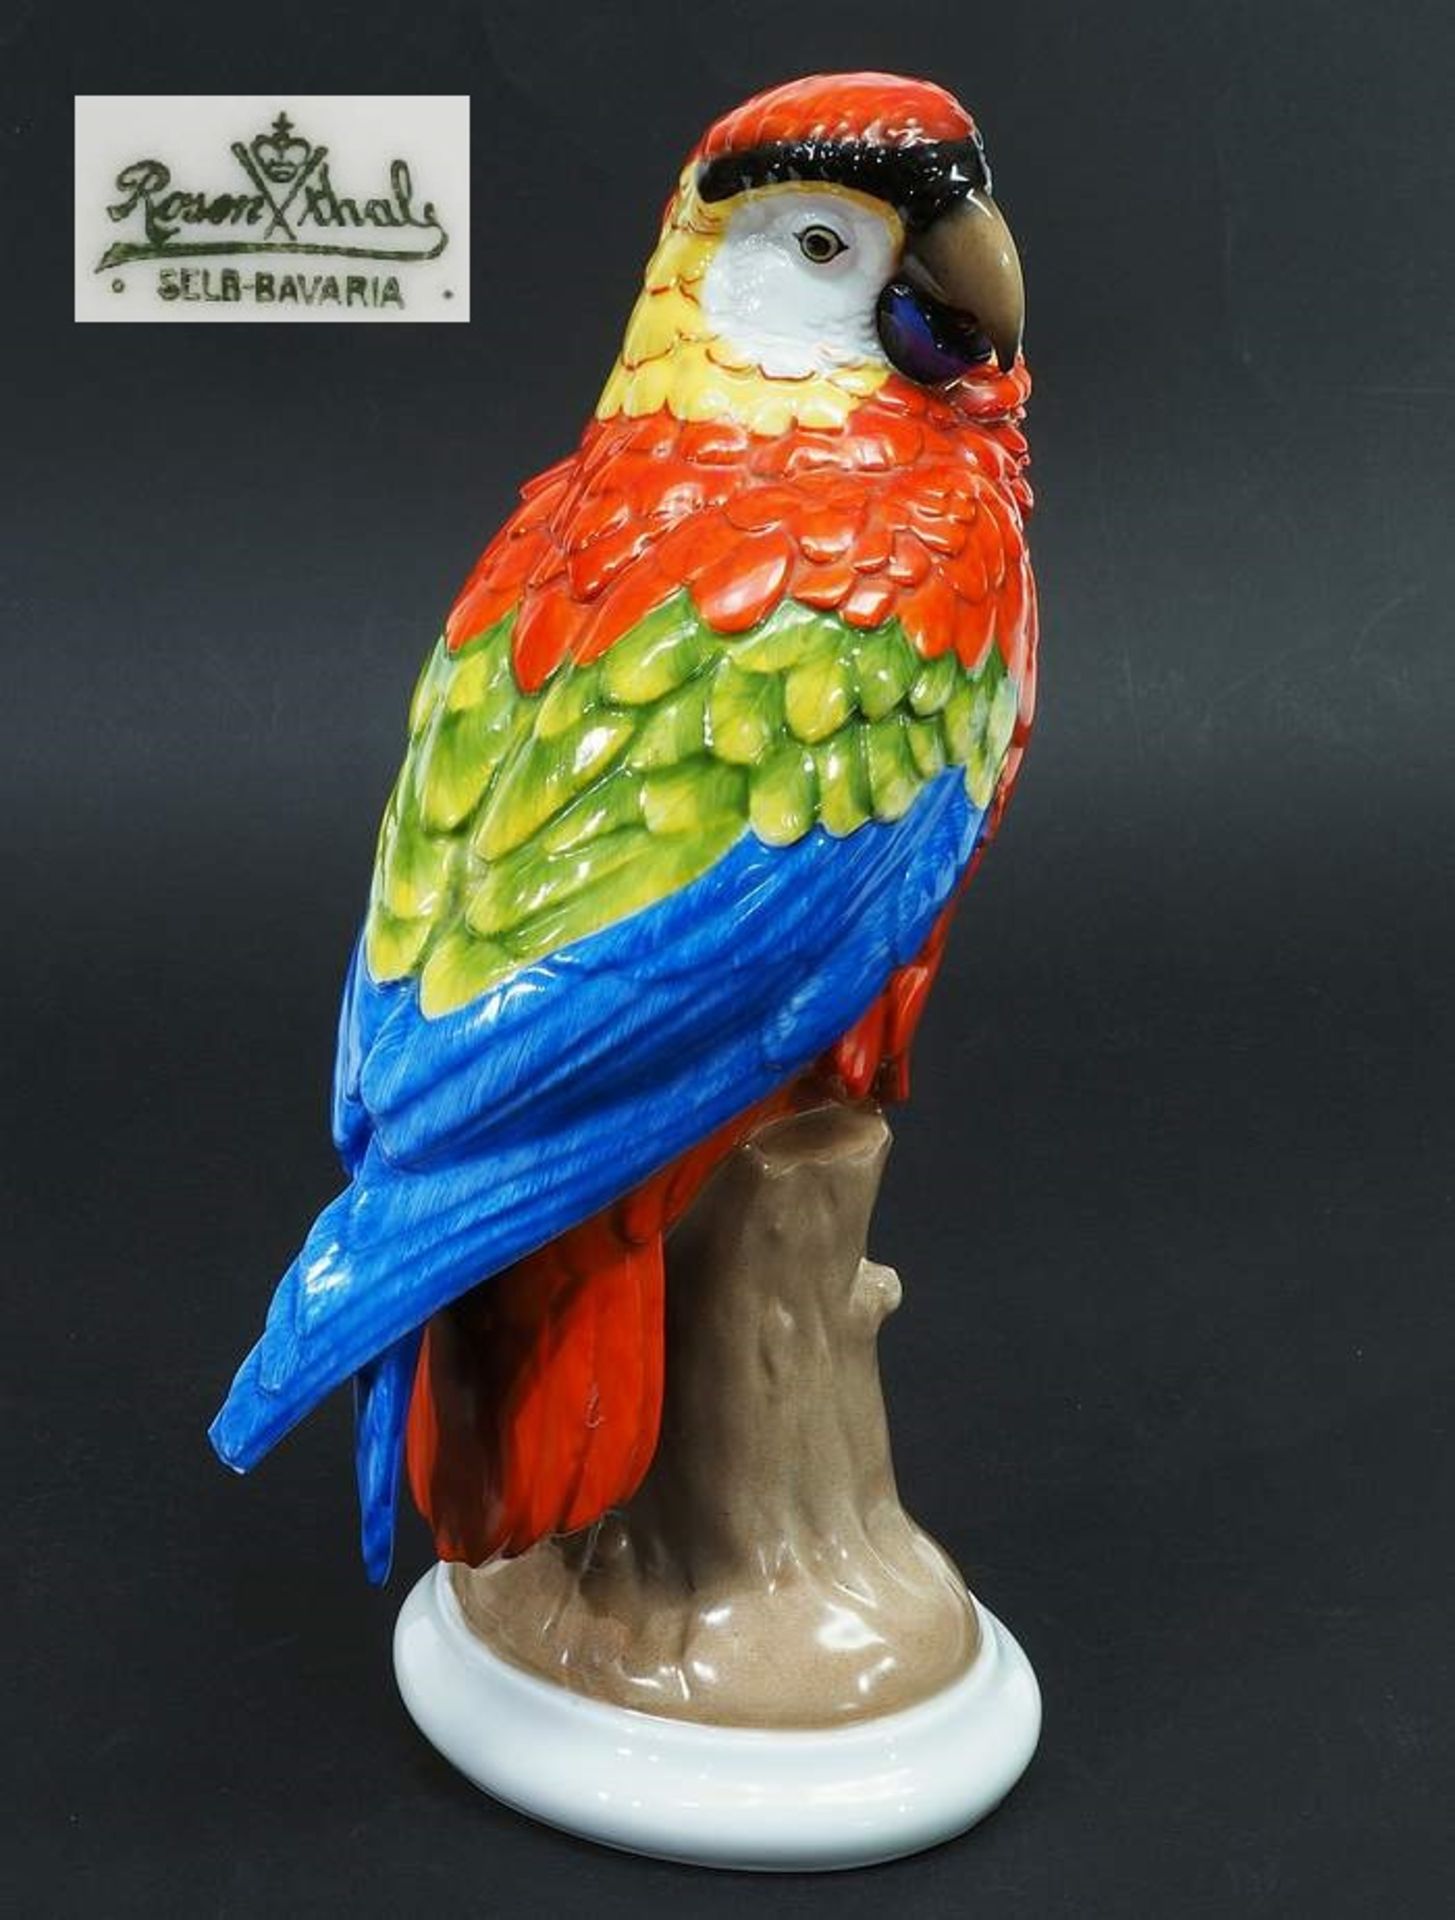 Papagei auf Baumstumpf. ROSENTHAL Selb Bavaria, Marke 1910 - 1945, Modellnummer H 749. Sitzender<br